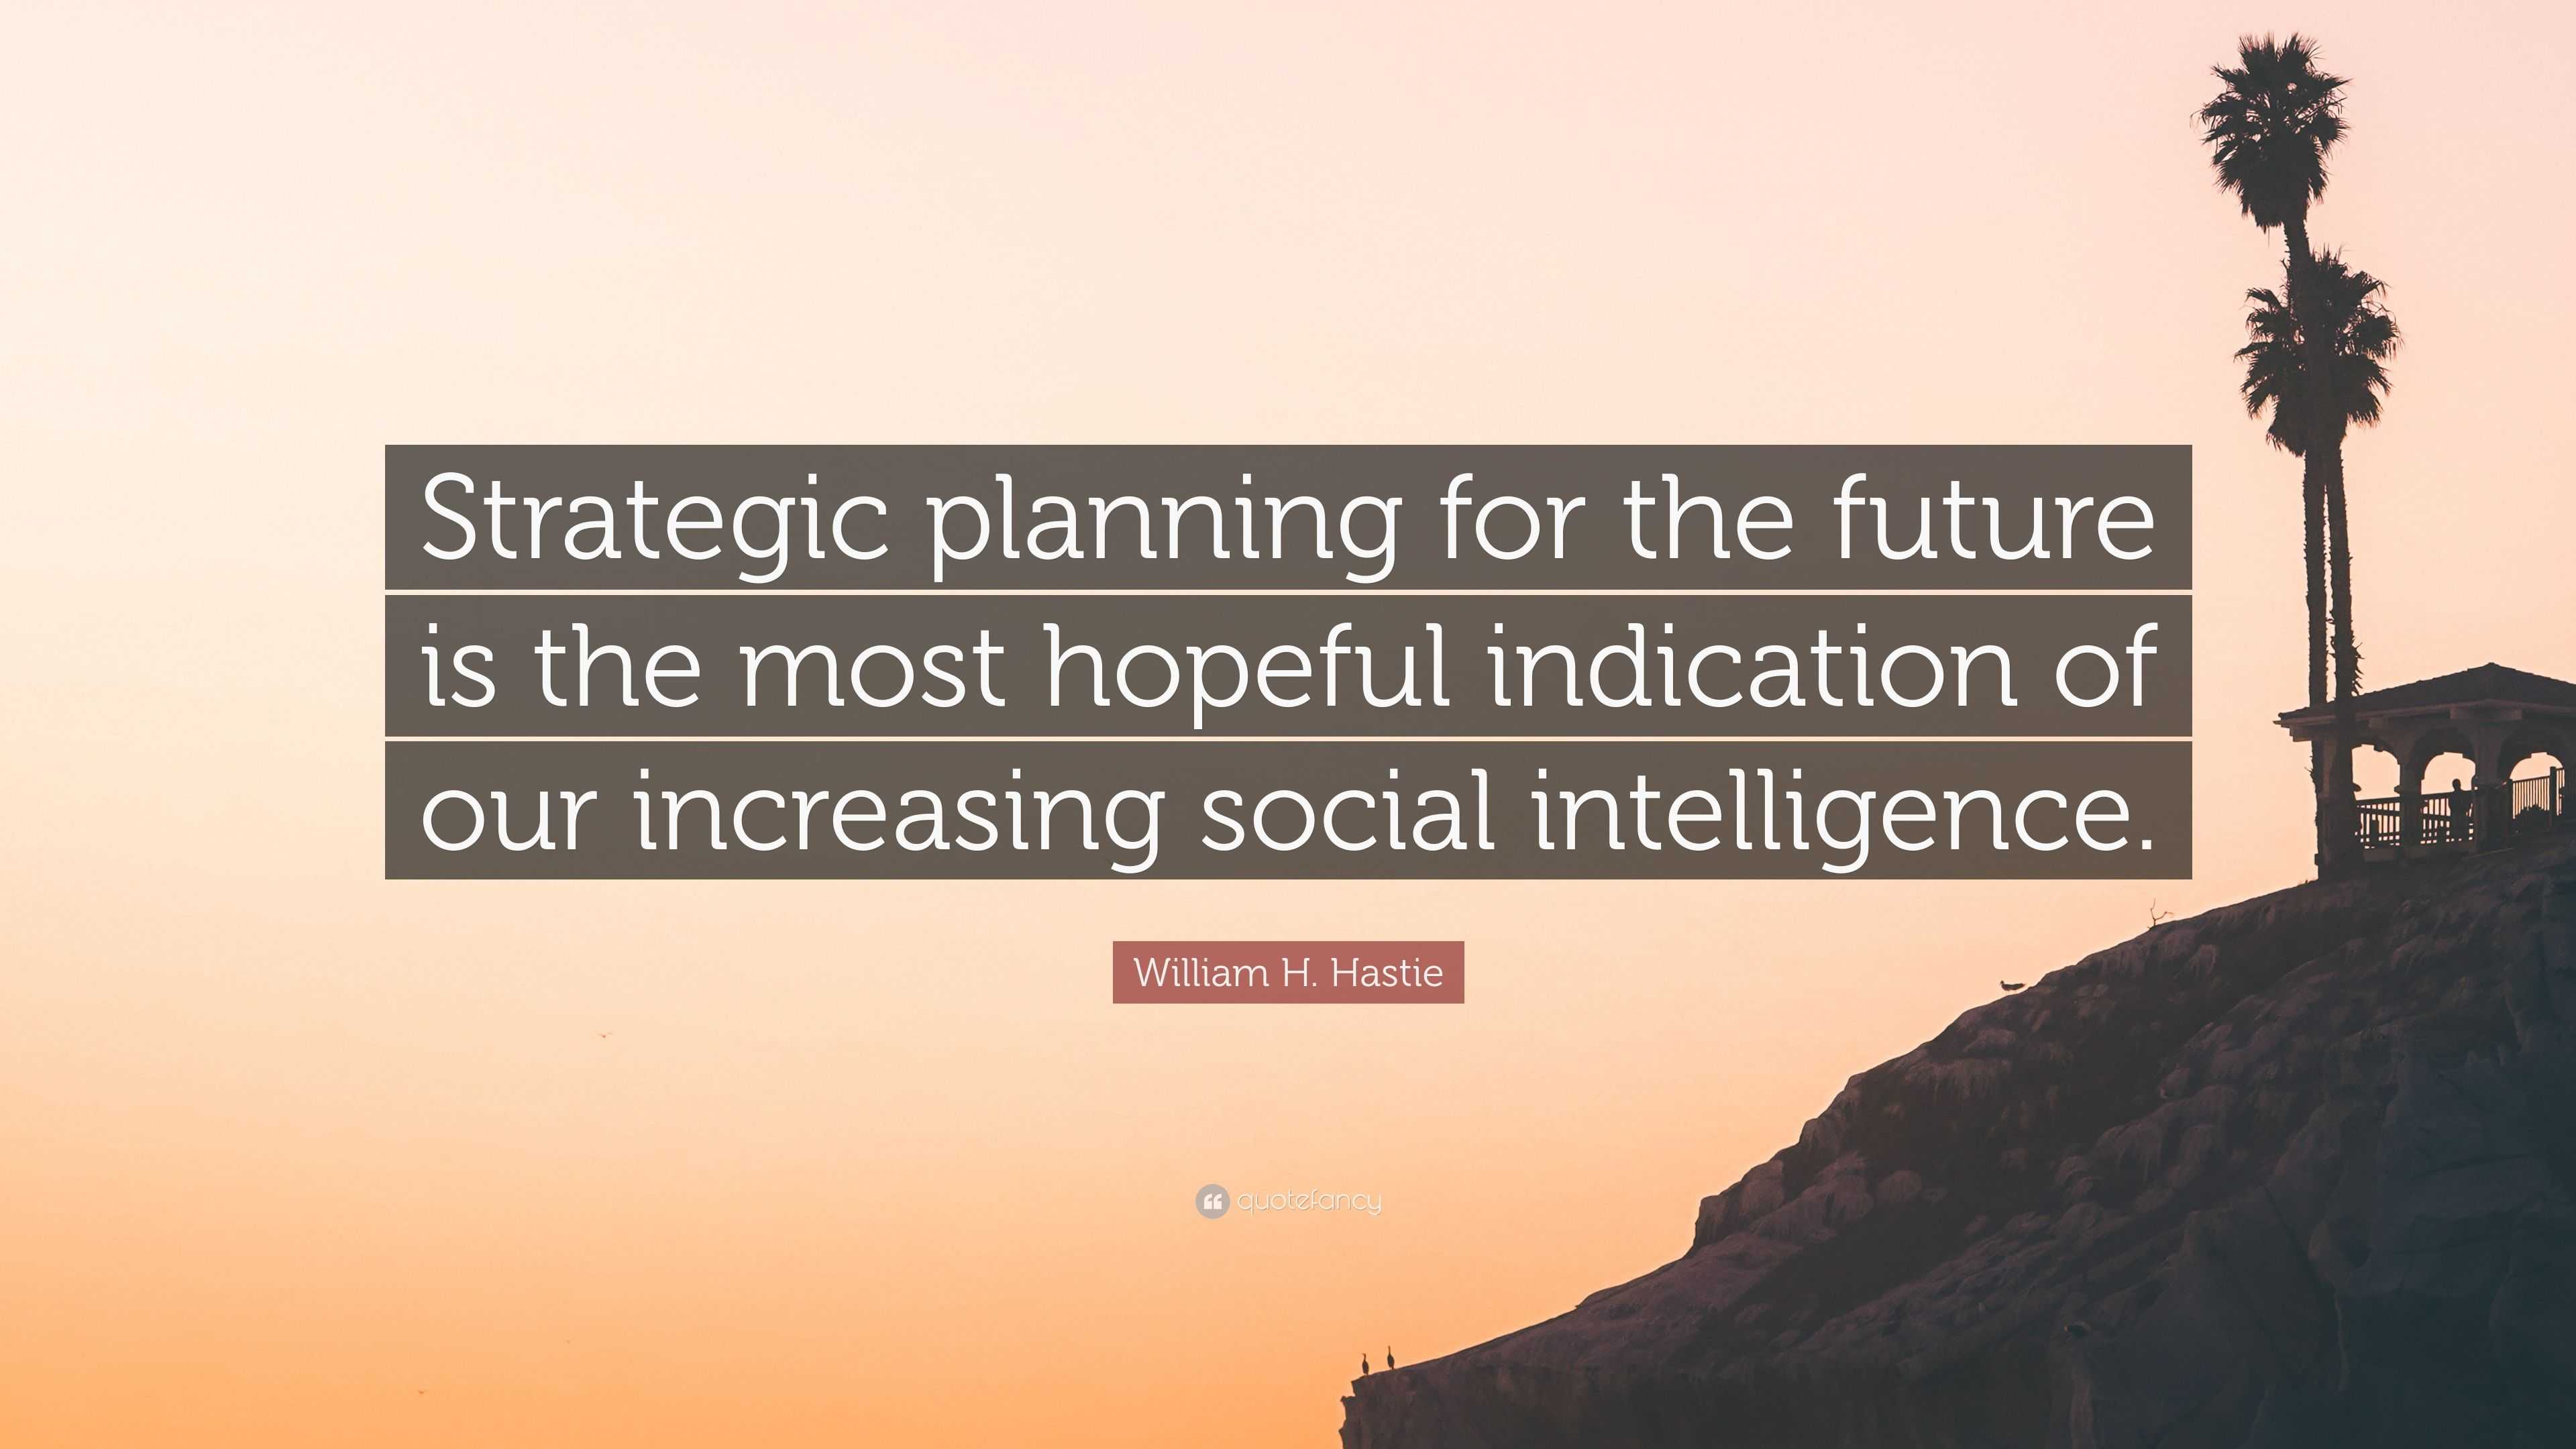 William H. Hastie Quote “Strategic planning for the